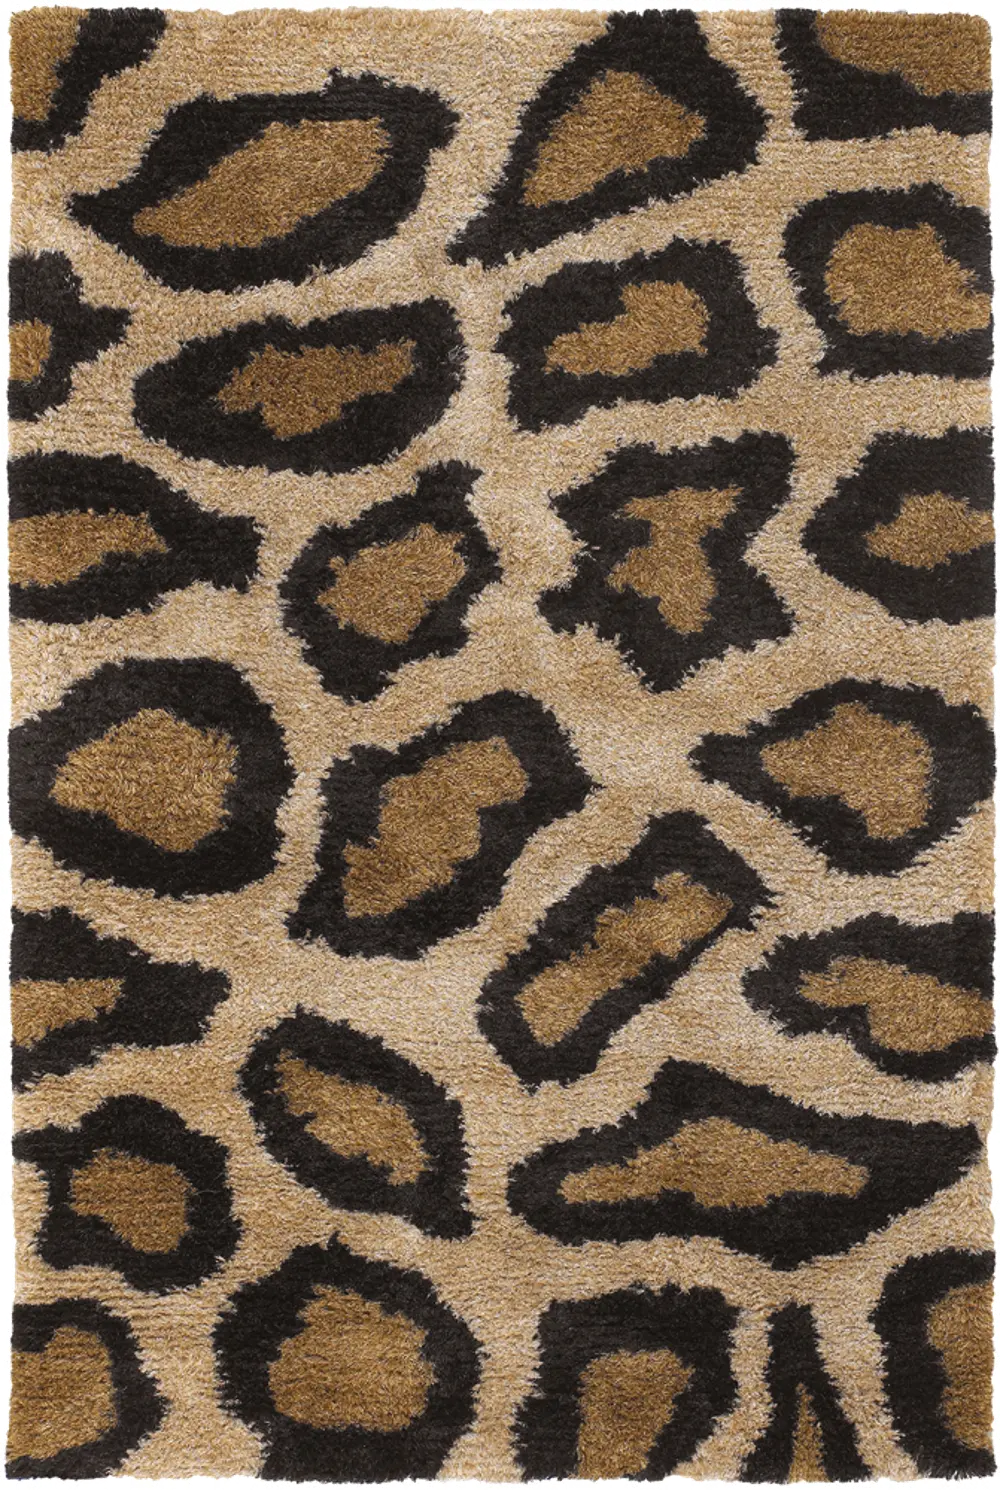 8 x 11 Large Cheetah Print Tan Area Rug - Amazon-1